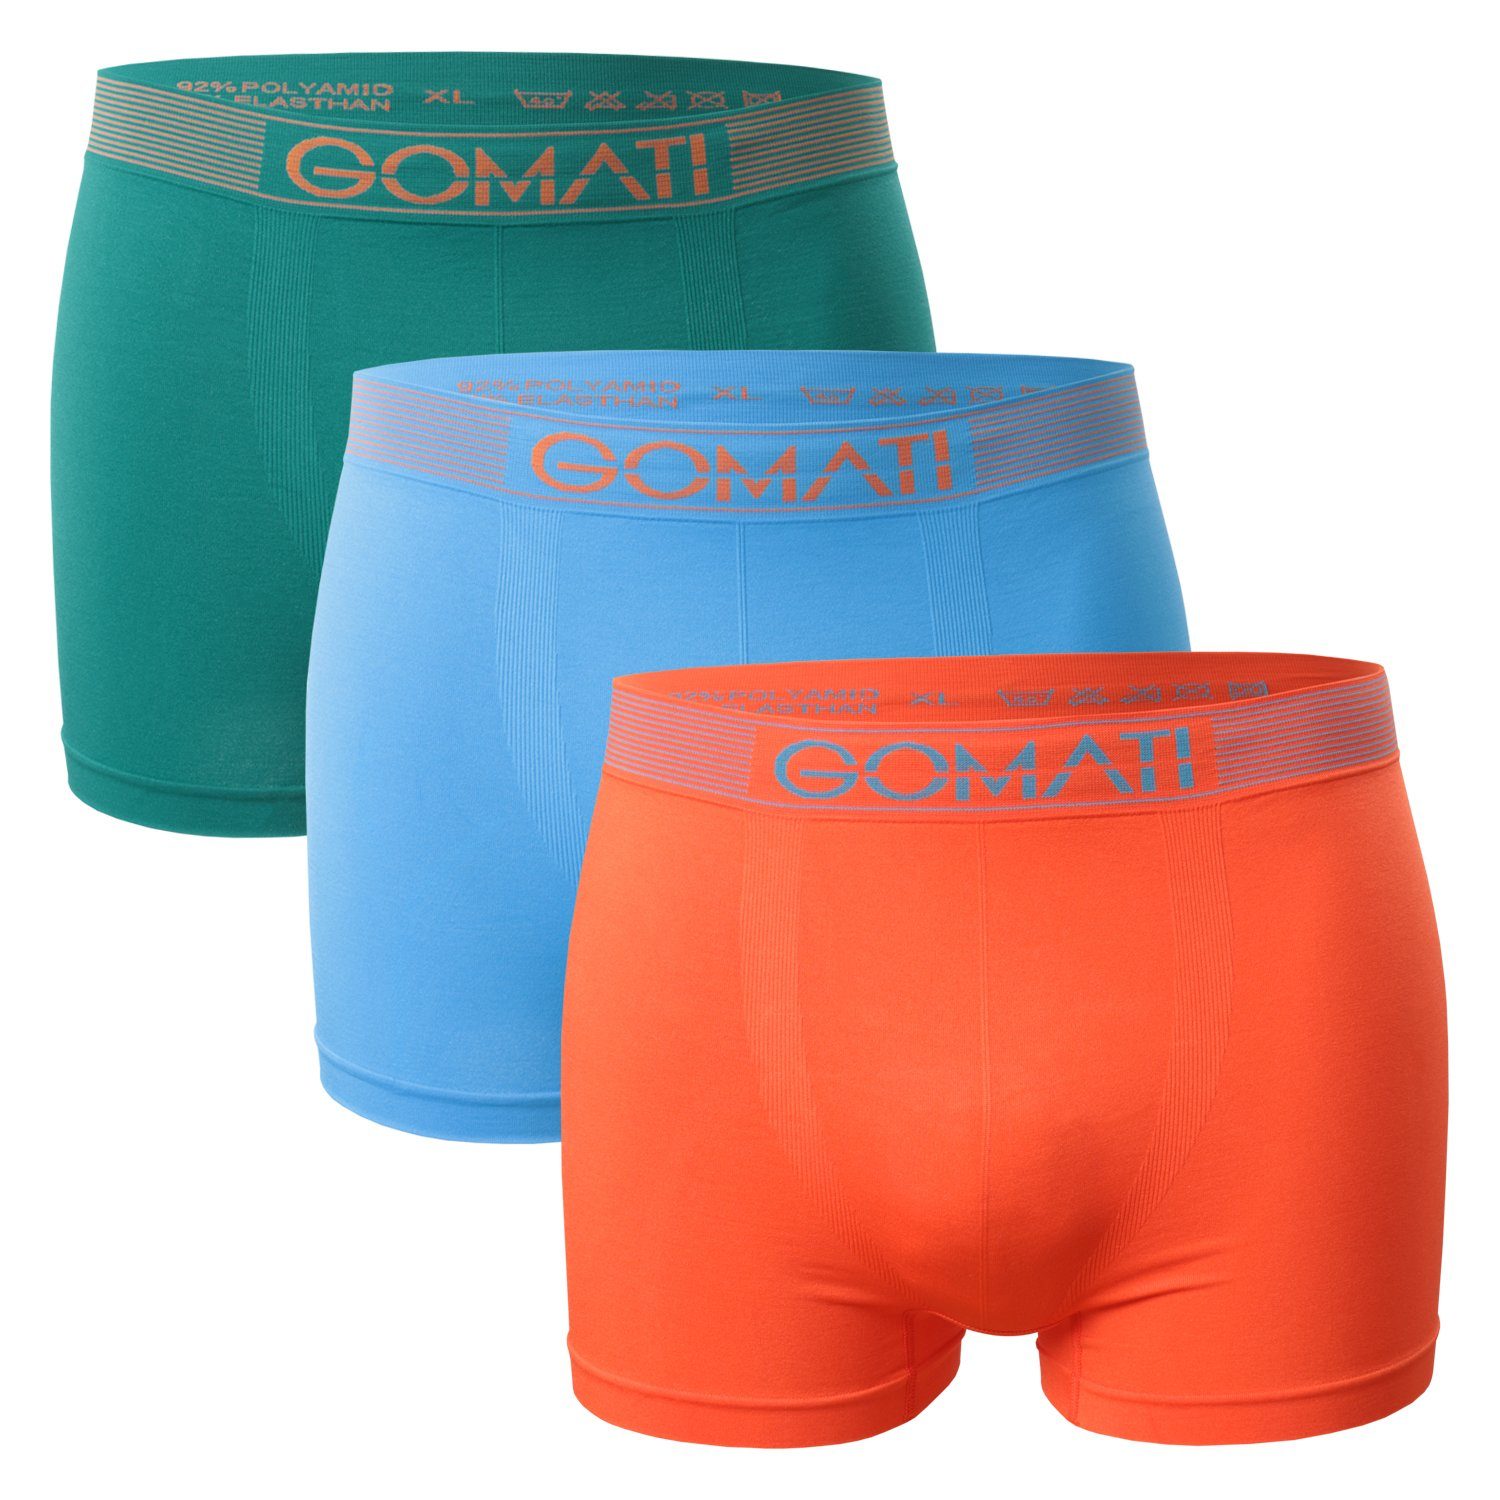 Gomati Boxershorts Herren / Orange Boxershorts Pants Seamless Pack) / (3er Microfaser-Elasthan Petrol Azure